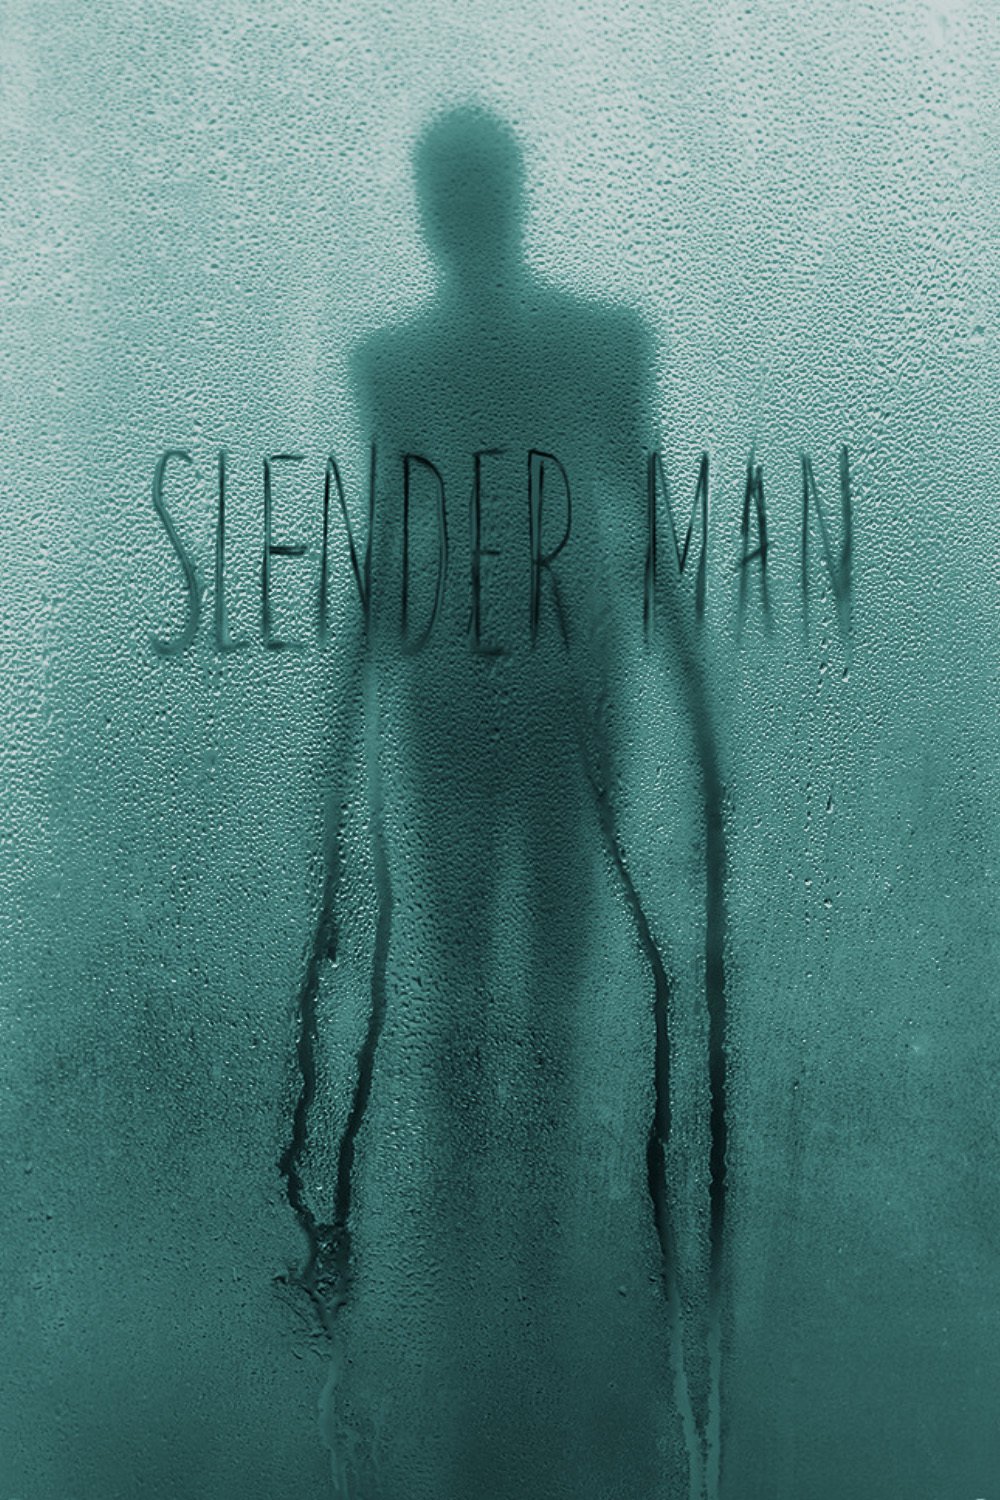 Plakat von "Slender Man"